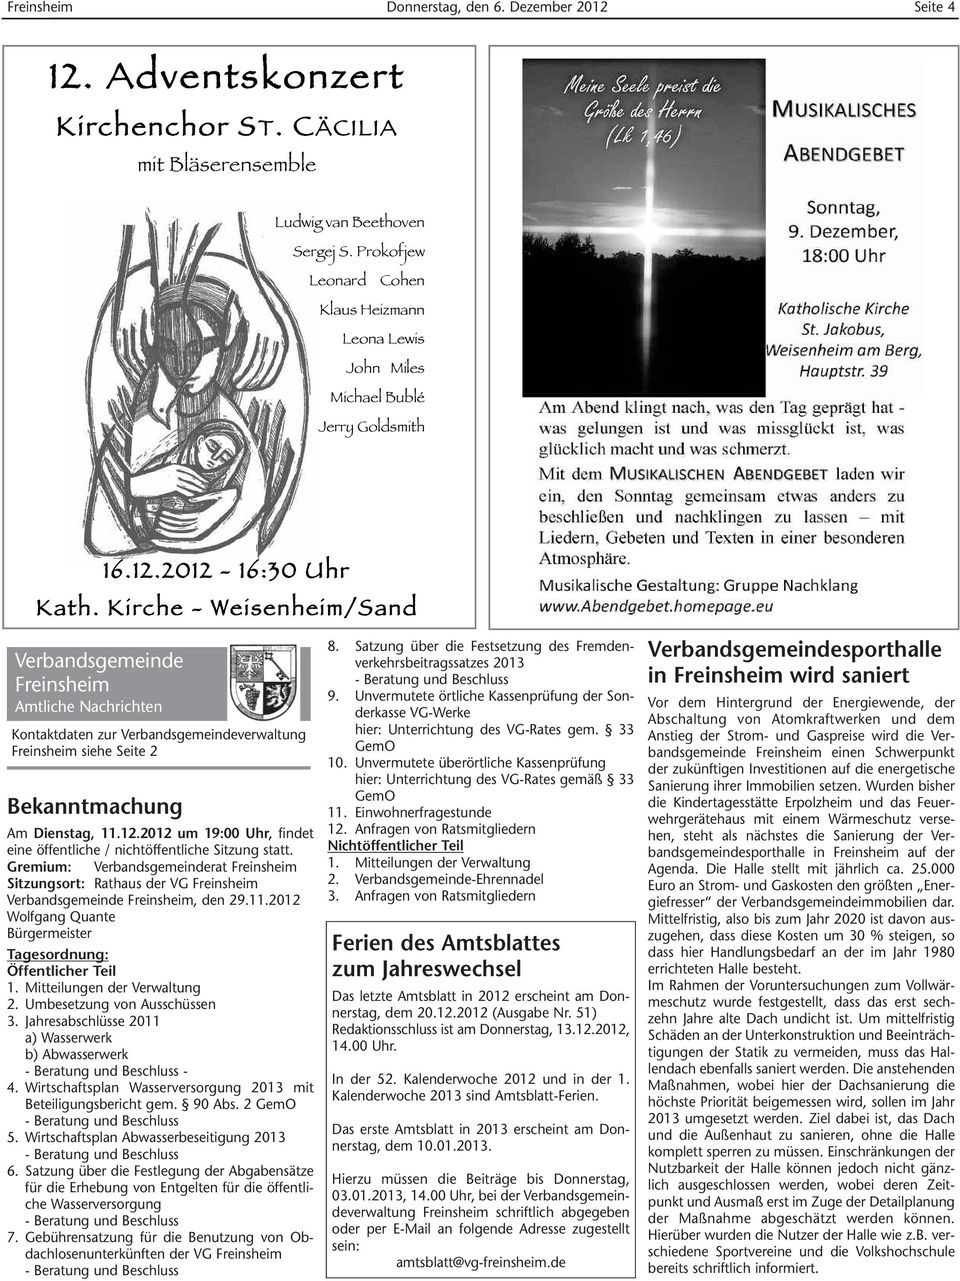 Kirche - Weisenheim/Sand Verbandsgemeinde Freinsheim Amtliche Nachrichten Kontaktdaten zur Verbandsgemeindeverwaltung Freinsheim siehe Seite 2 Bekanntmachung Am Dienstag, 11.12.